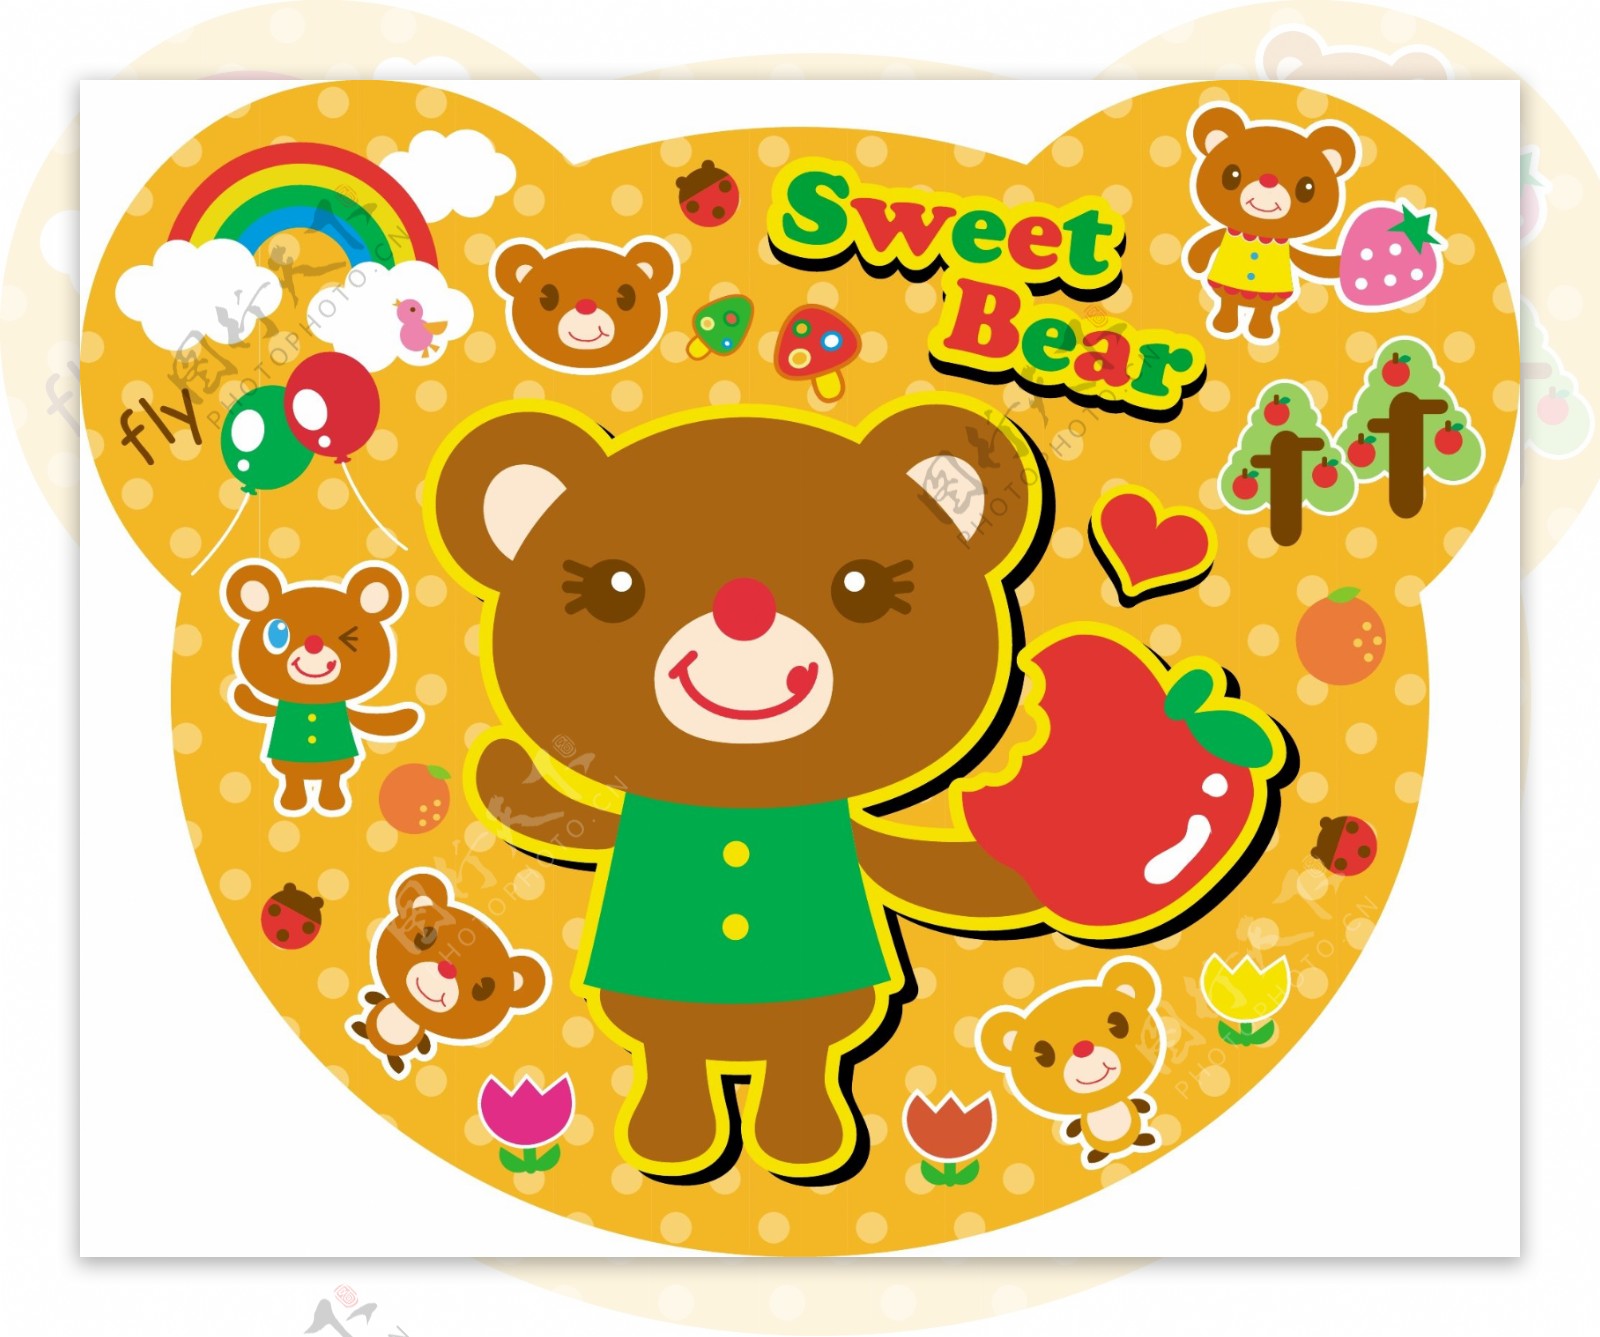 红遍日本的熊本熊并没有太多偶像包袱_好玩_GQ男士网